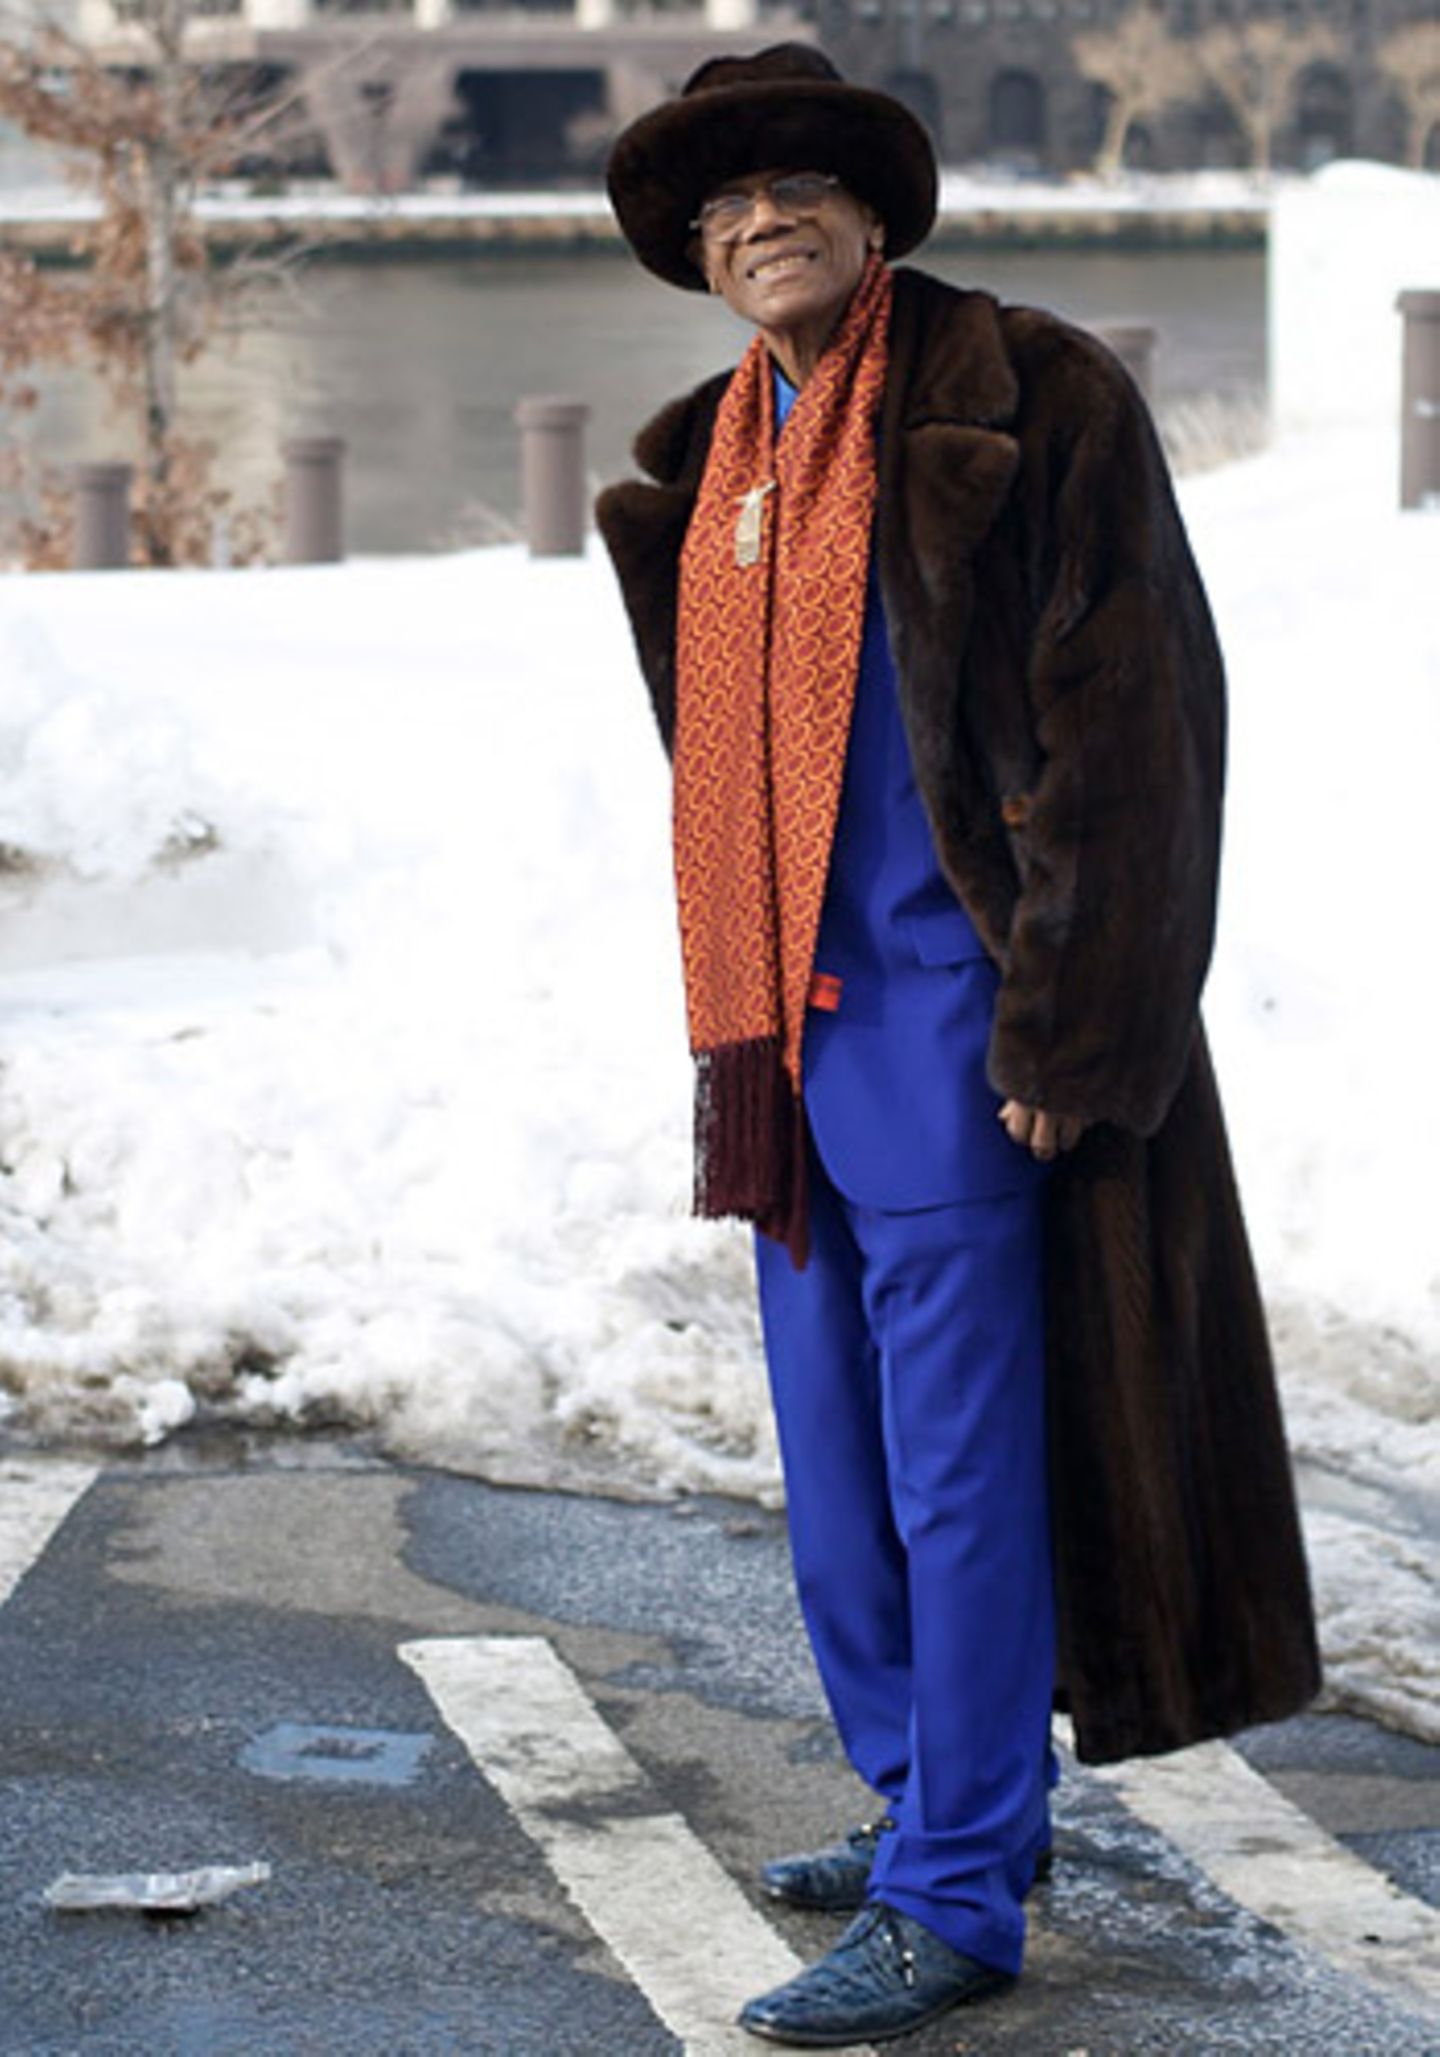 Ein Dandy macht blau: Anzug, Hemd, Schuhe und selbstverständlich auch die Socken stimmt dieser Mode-Fan aus New York perfekt aufeinander ab - und das jeden Tag aufs Neue. Die jungen Männer, erzählte er Ari Seth Cohen, legten darauf ja leider keinen Wert mehr. Zum kobaltblauen Anzug trägt er einen Pelz-Hut mit passendem Mantel.